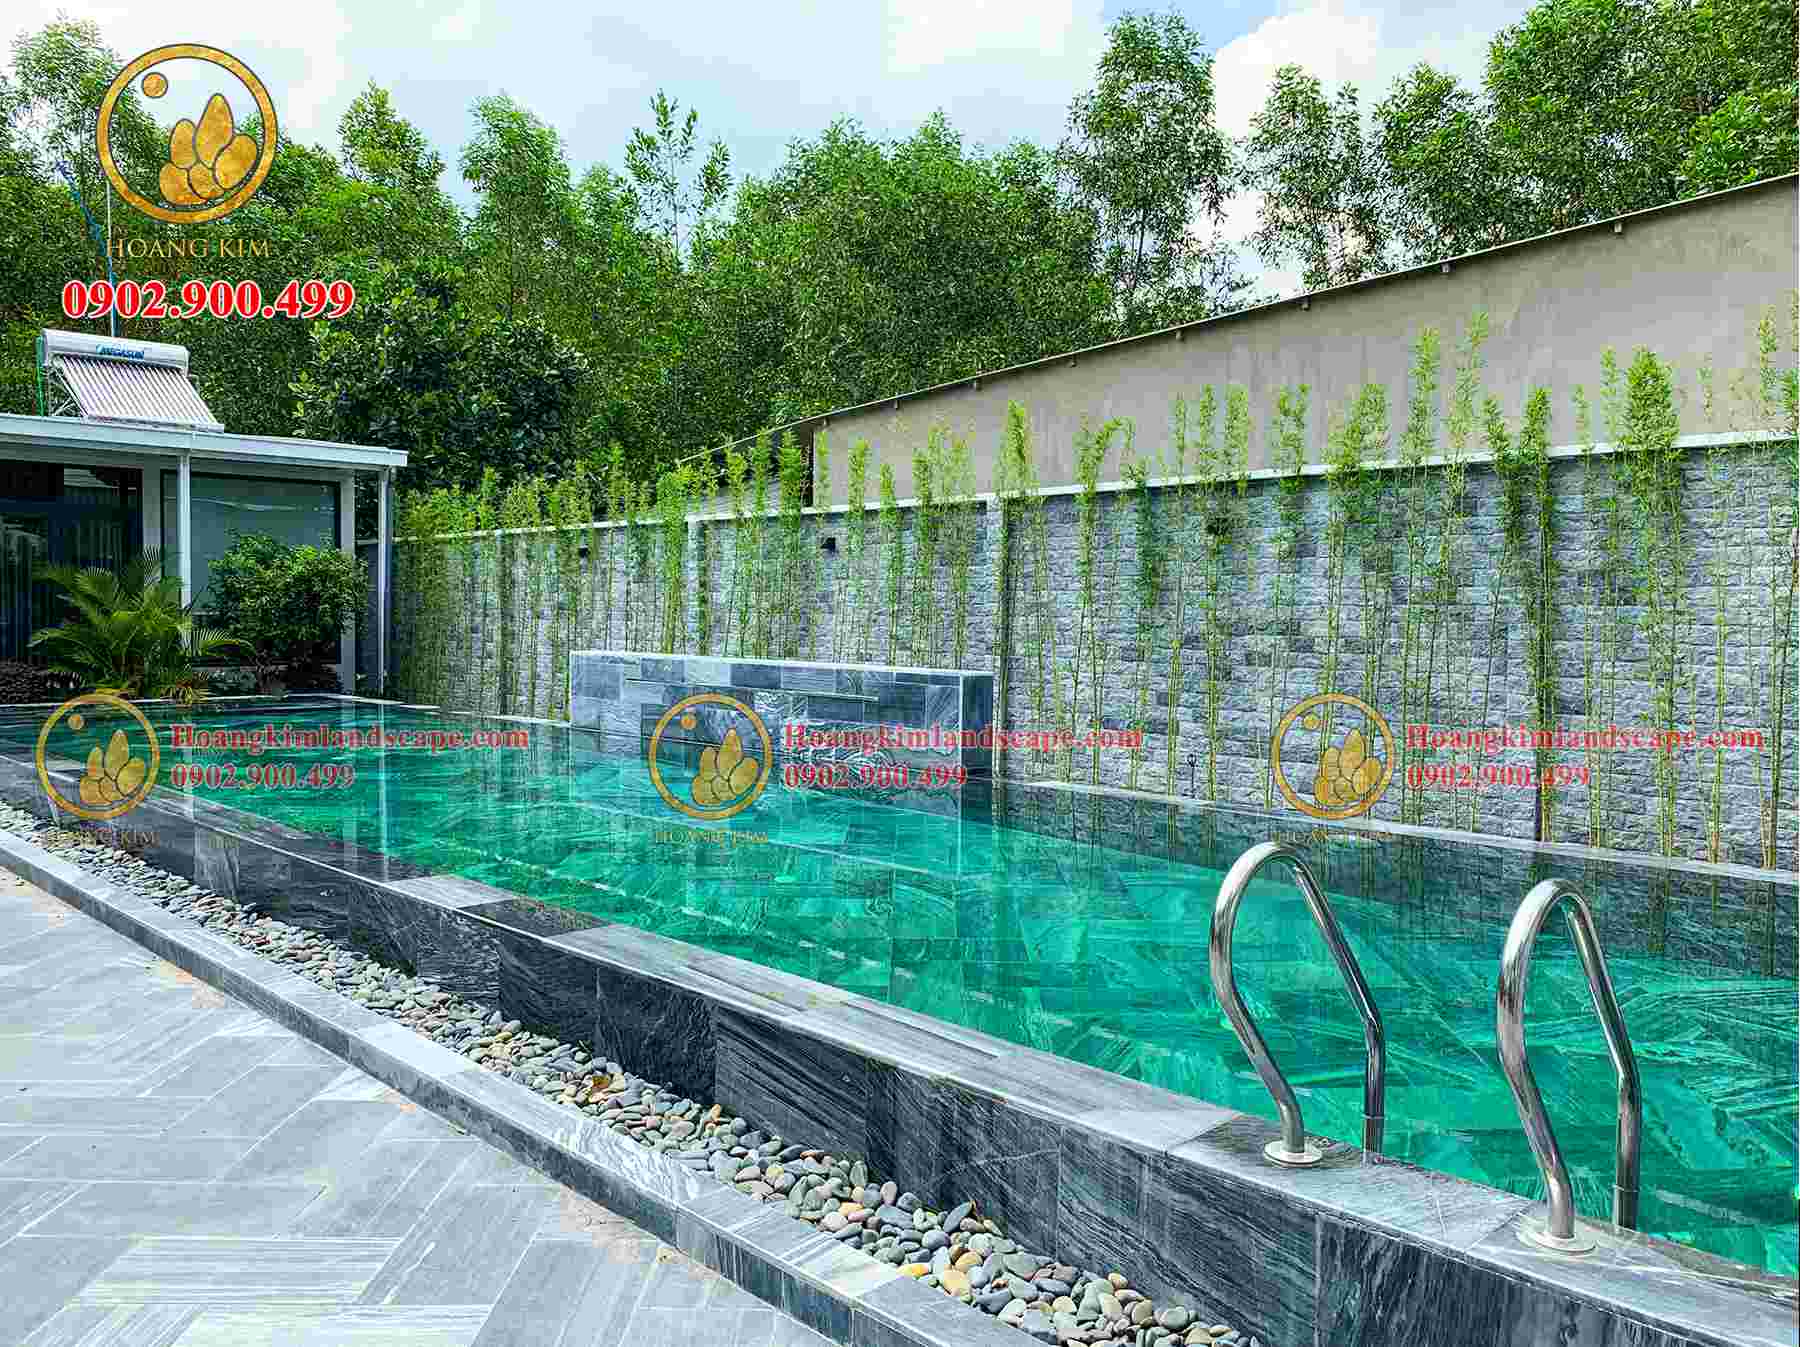 Hồ bơi nhà vườn nghỉ dưỡng của anh Định